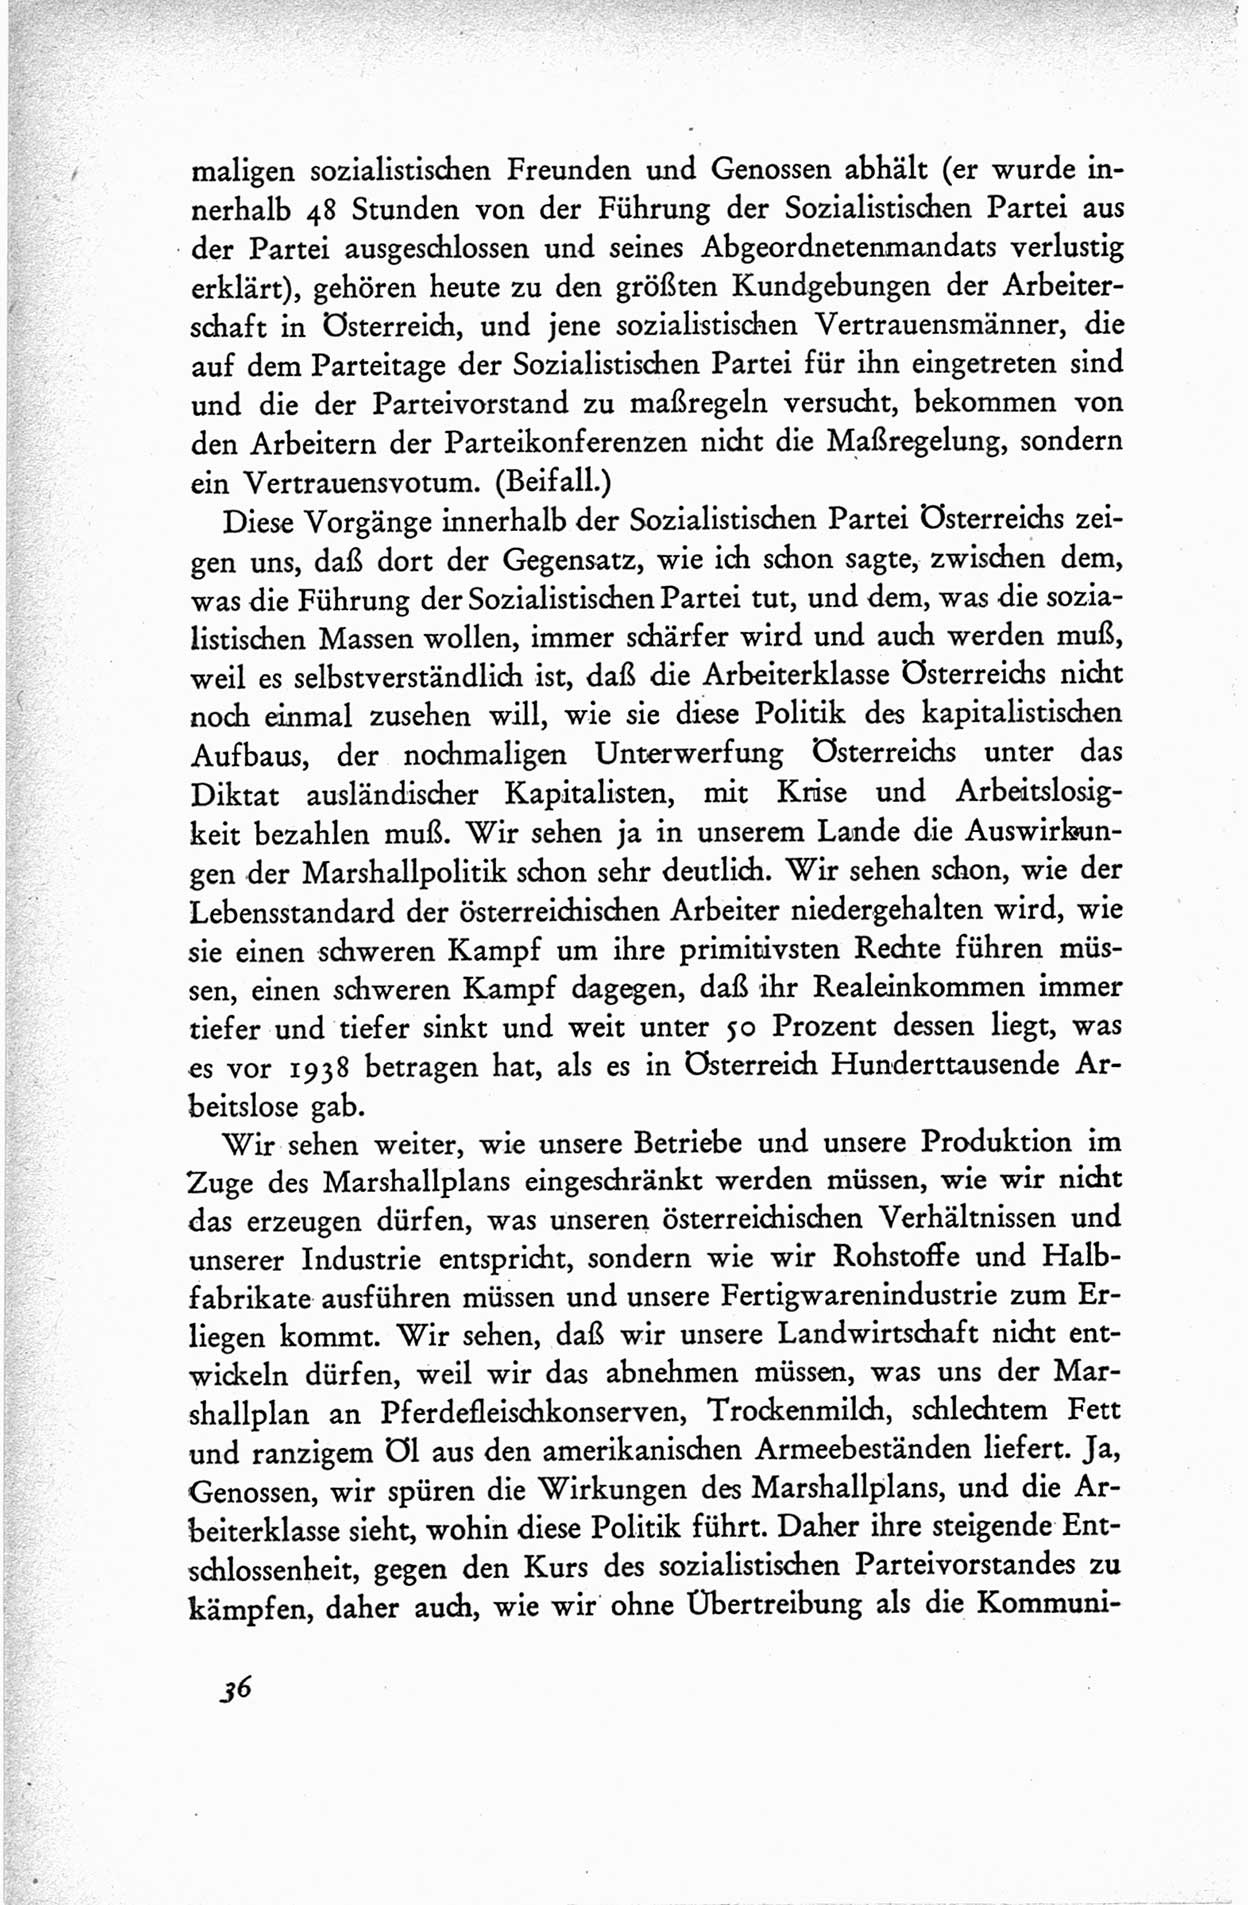 Protokoll der ersten Parteikonferenz der Sozialistischen Einheitspartei Deutschlands (SED) [Sowjetische Besatzungszone (SBZ) Deutschlands] vom 25. bis 28. Januar 1949 im Hause der Deutschen Wirtschaftskommission zu Berlin, Seite 36 (Prot. 1. PK SED SBZ Dtl. 1949, S. 36)